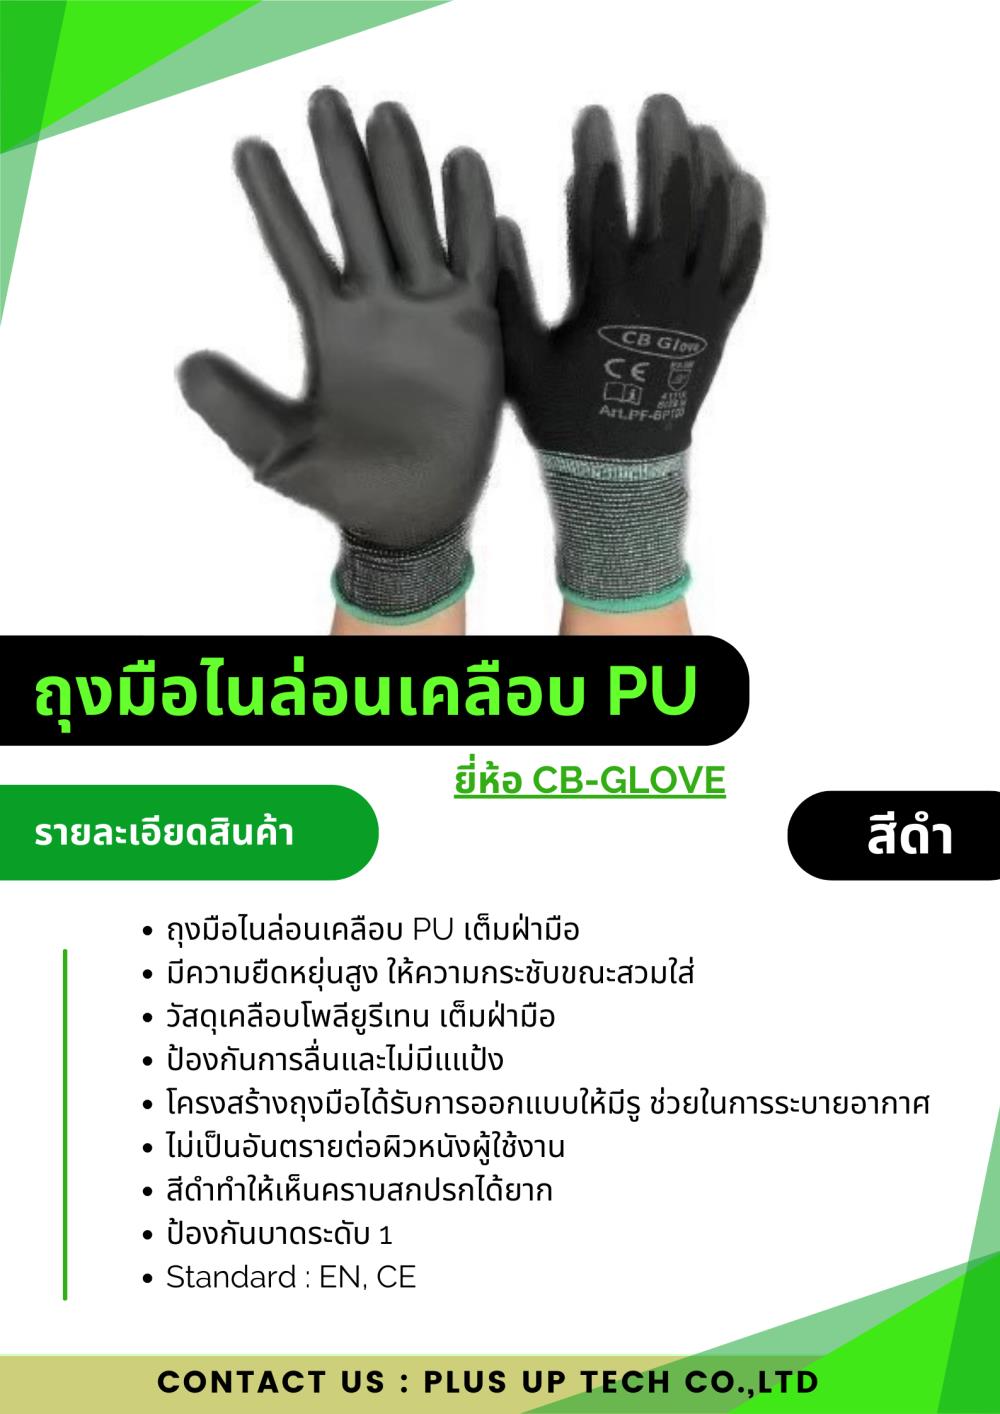 ถุงมือไนล่อนเคลือบพียู สีดำ ยี่ห้อ CB-GLOVE,ถุงมือพียู CB-GLOVE 56 puสีดำ พียูสีดำ,CB-GLOVE,Plant and Facility Equipment/Safety Equipment/Gloves & Hand Protection